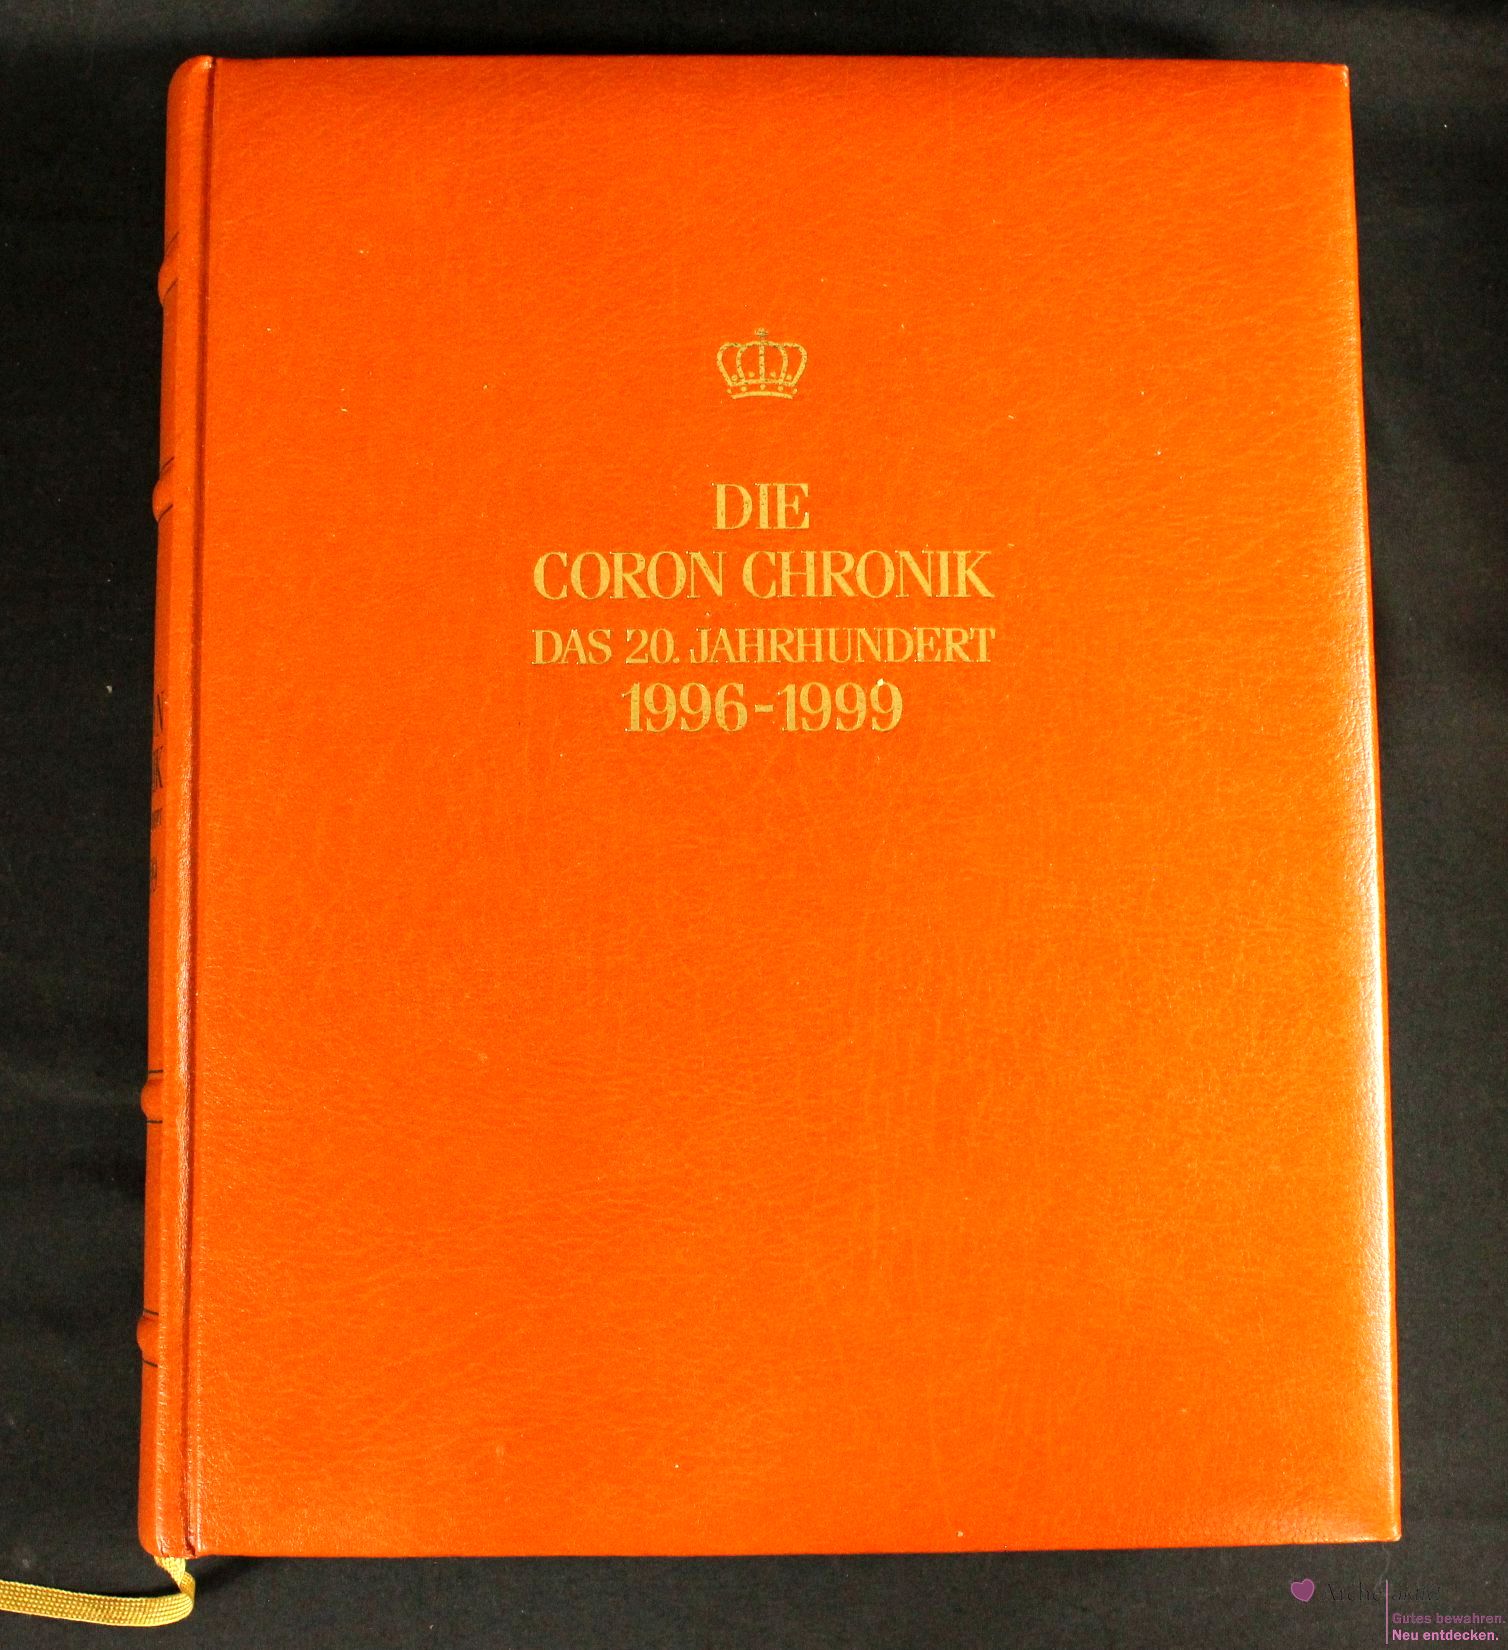 Die Coron Chronik - Das 20. Jahrhundert 1996 - 1999, Band 25, mit Gold-Kopfschnitt, gebraucht